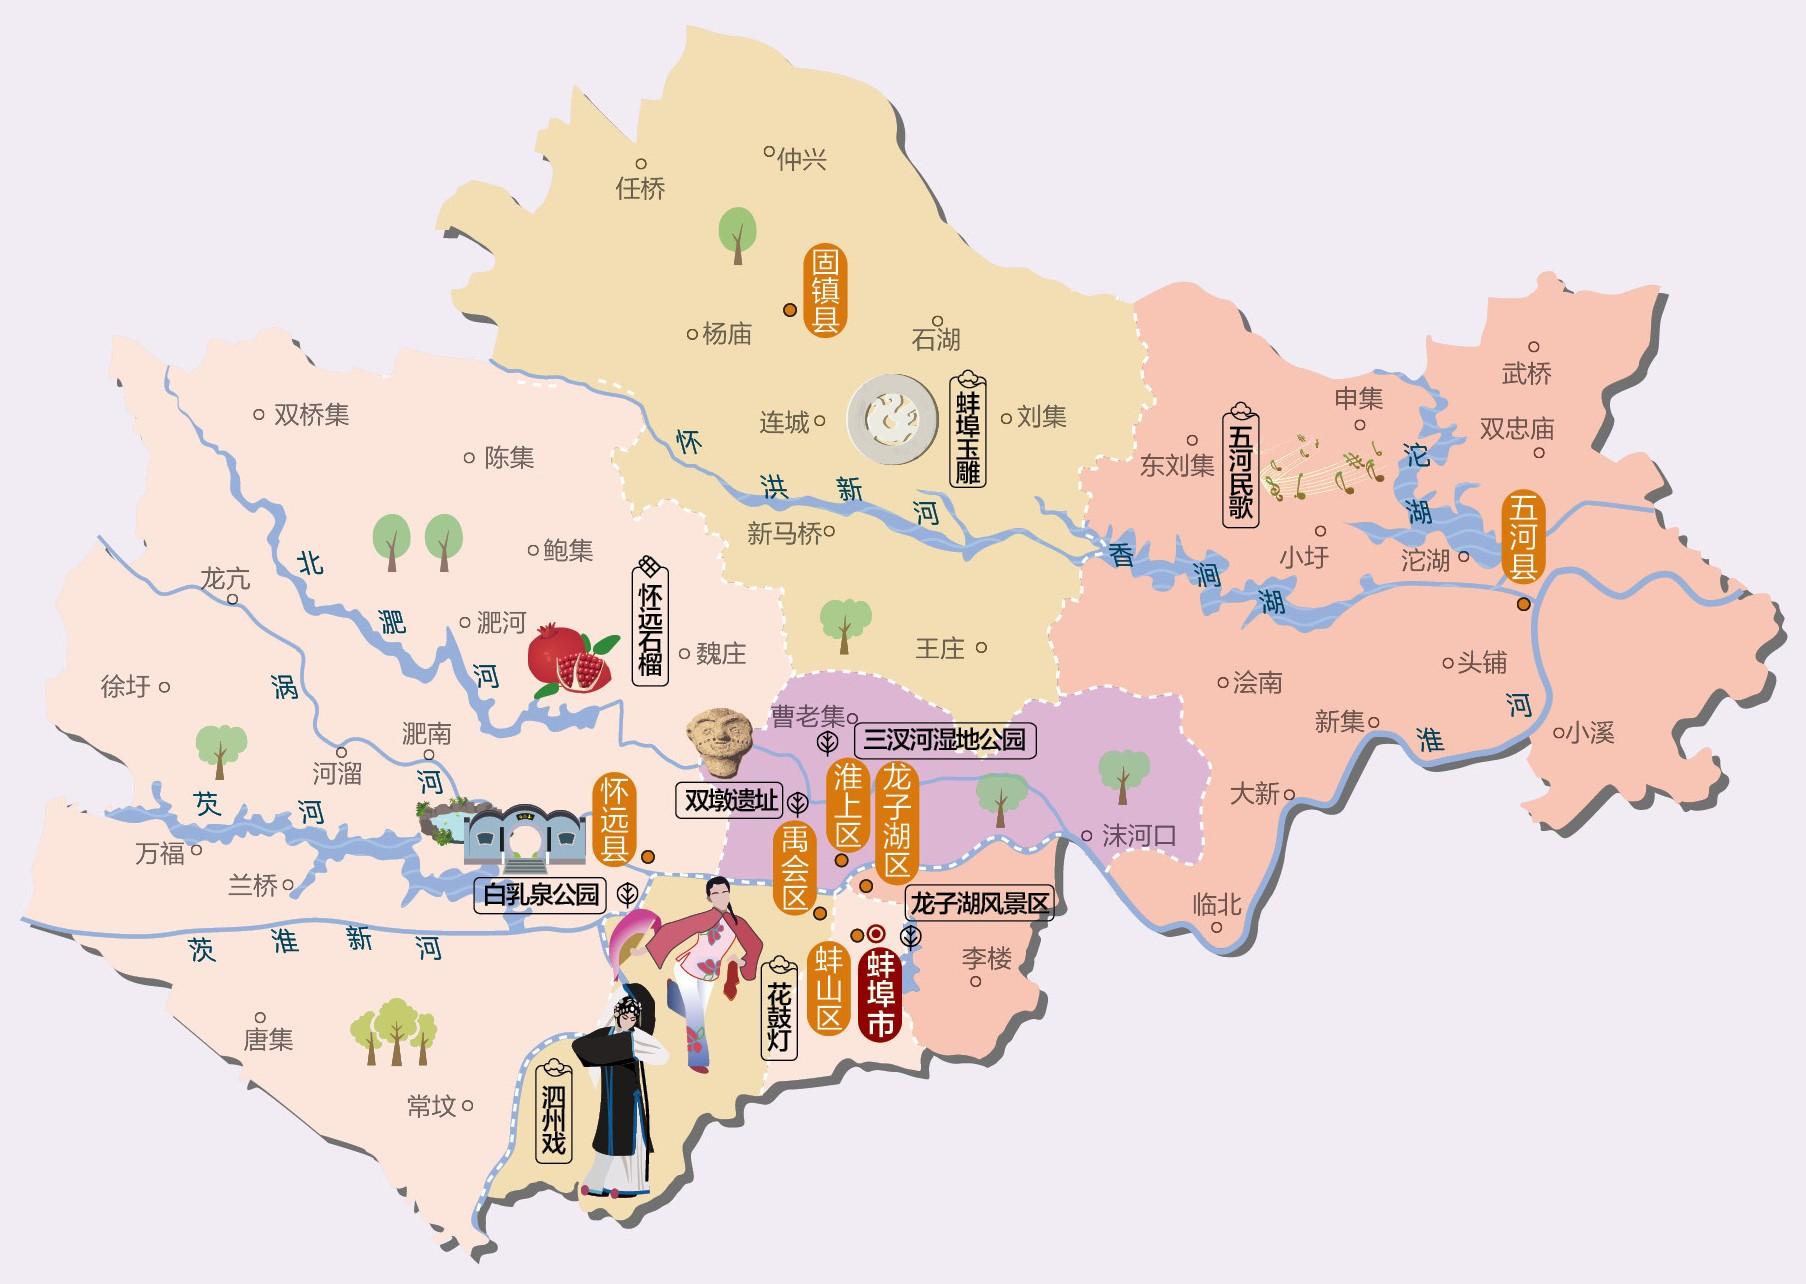 蚌埠市地图及行政区划图片